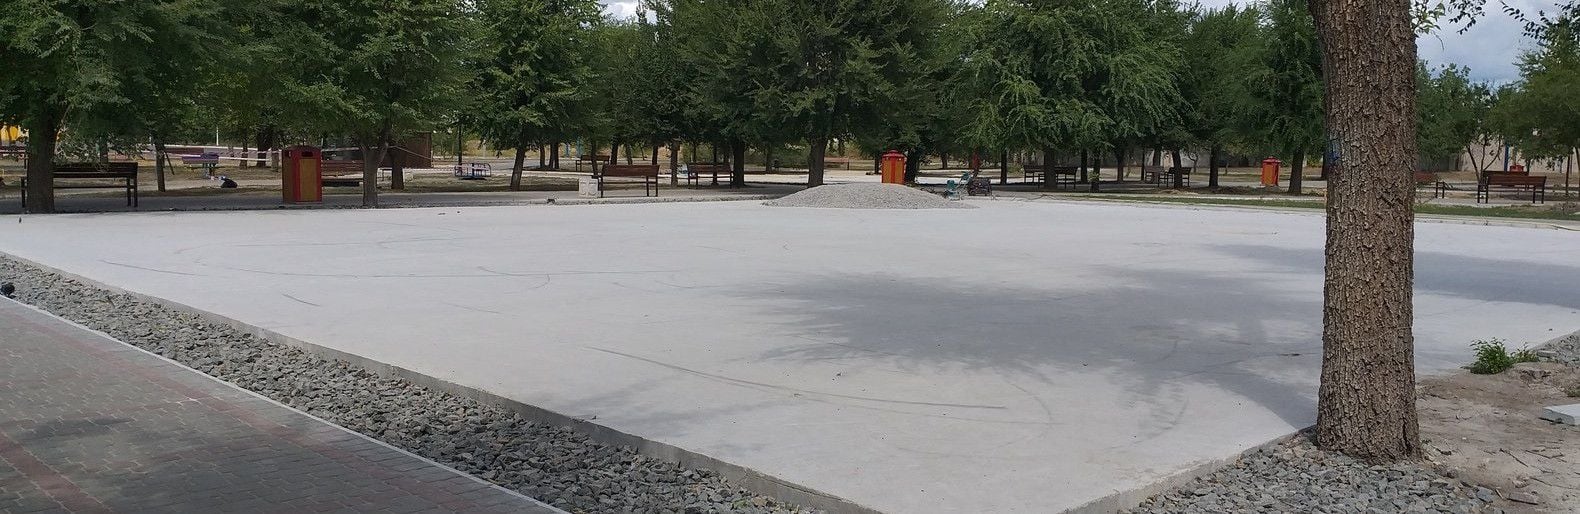 Фотофакт: северодонецкий скейт-парк до сих пор не сдали в эксплуатацию